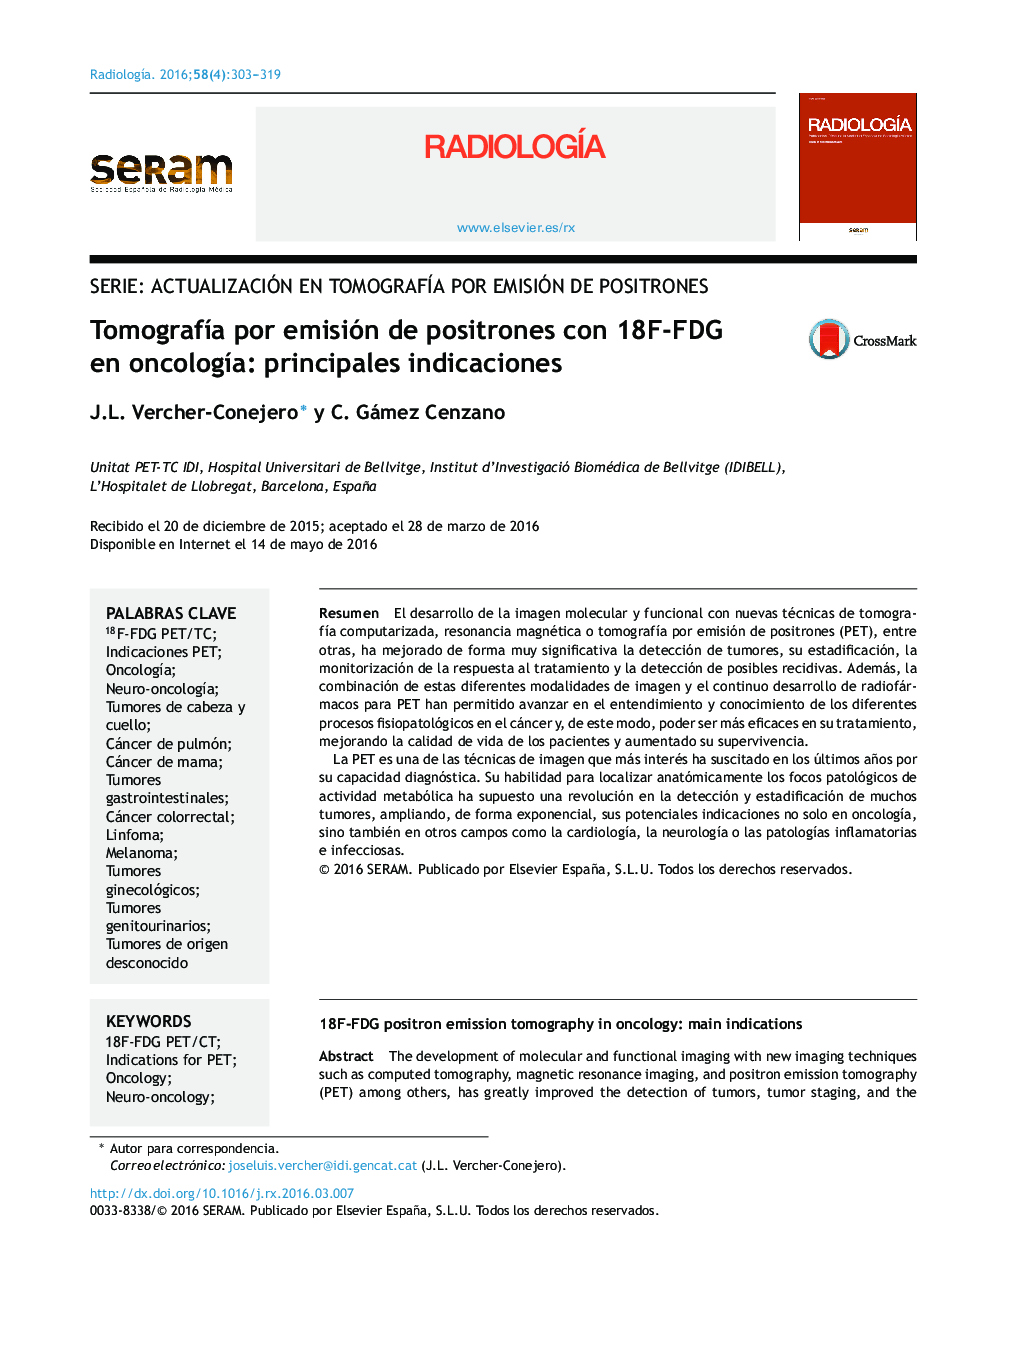 Tomografía por emisión de positrones con 18F-FDG en oncología: principales indicaciones